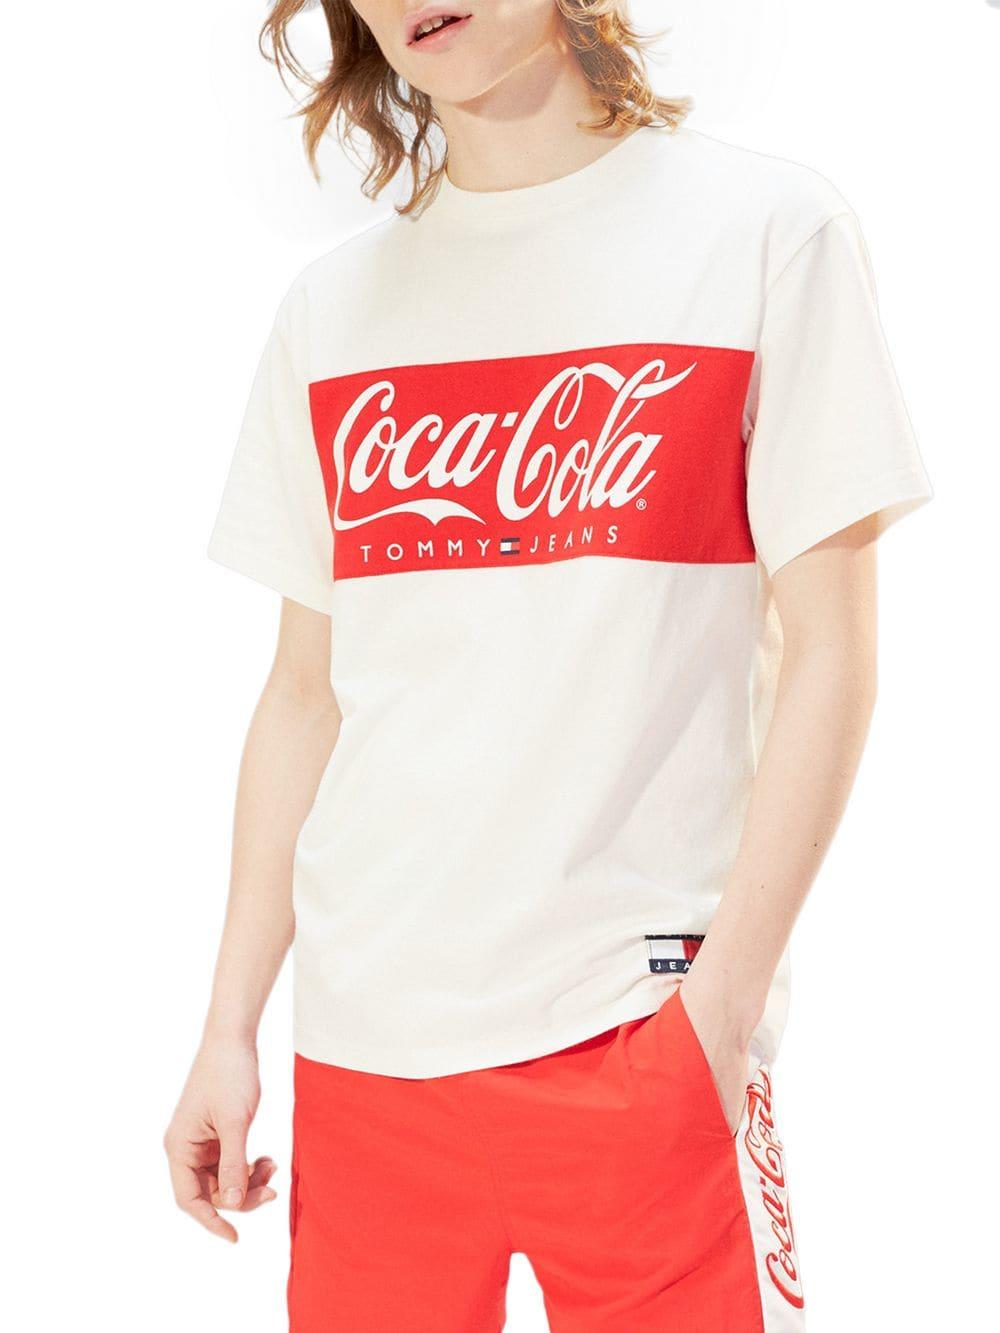 Tommy Coca Cola Shirt Deals, 53% OFF | a4accounting.com.au